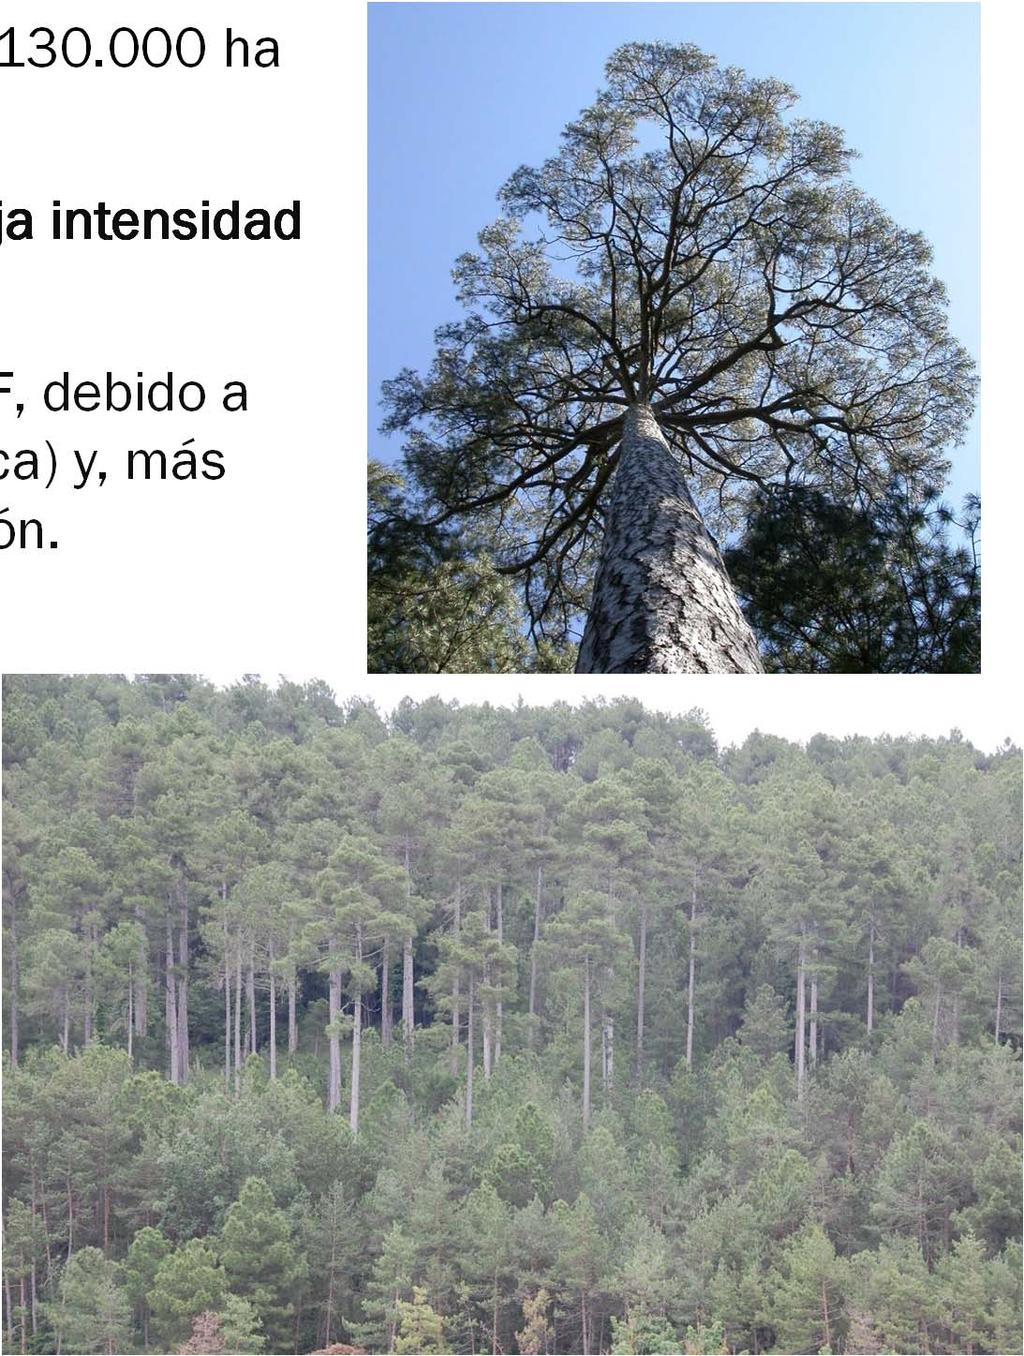 Introducción - Pinus nigra en Cataluña ocupa unas 130.